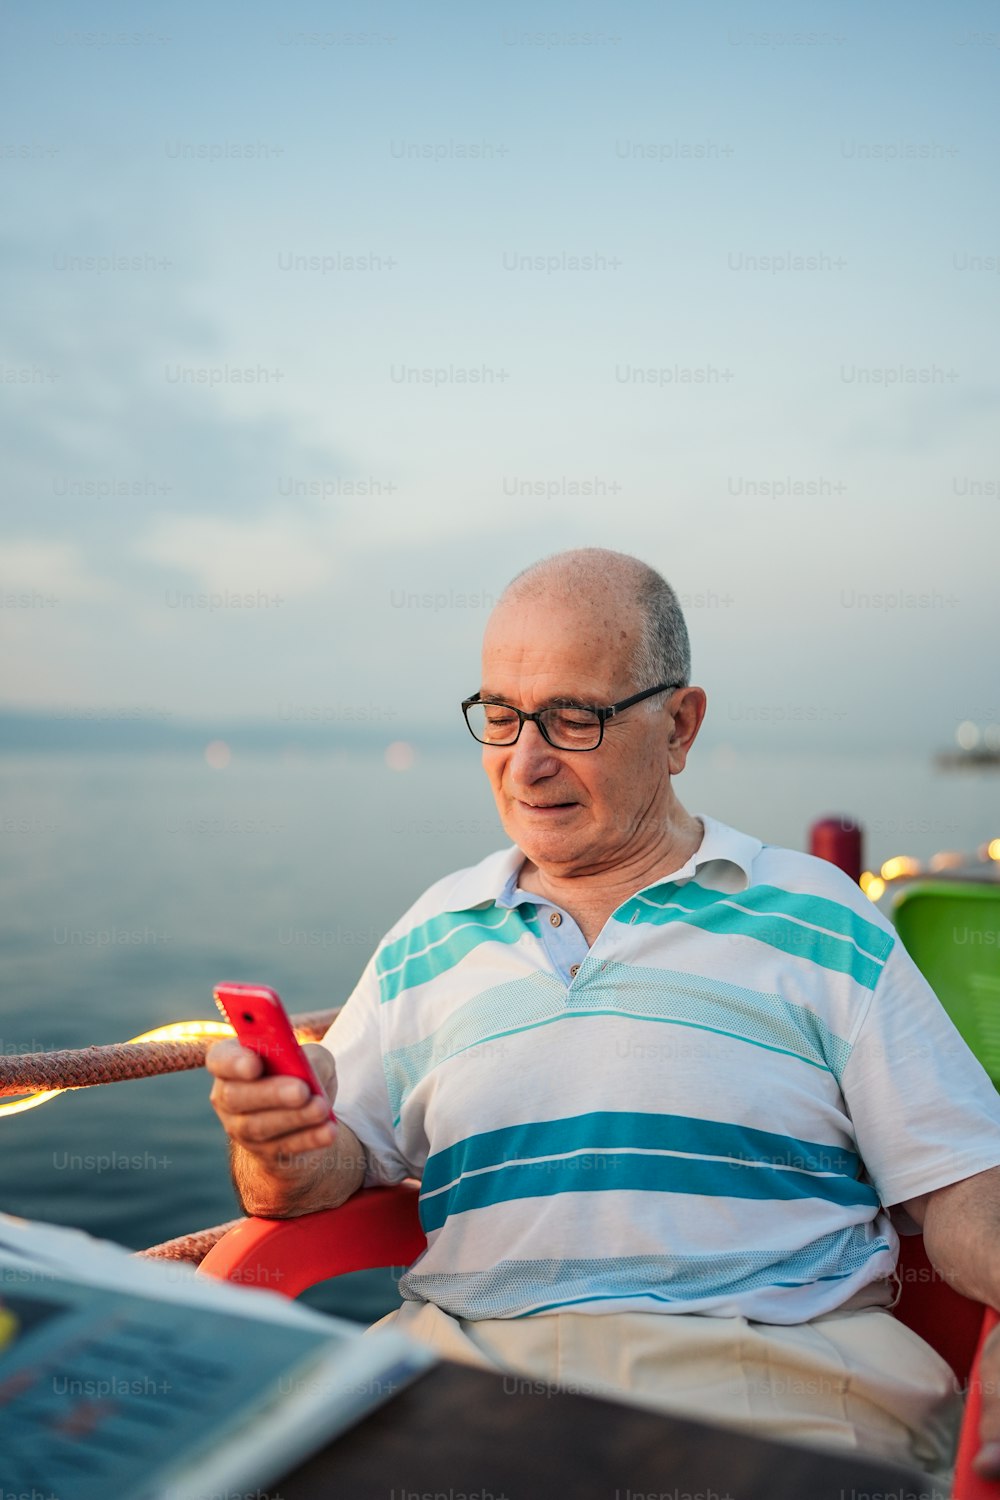 Un hombre sentado en una silla mirando un teléfono celular